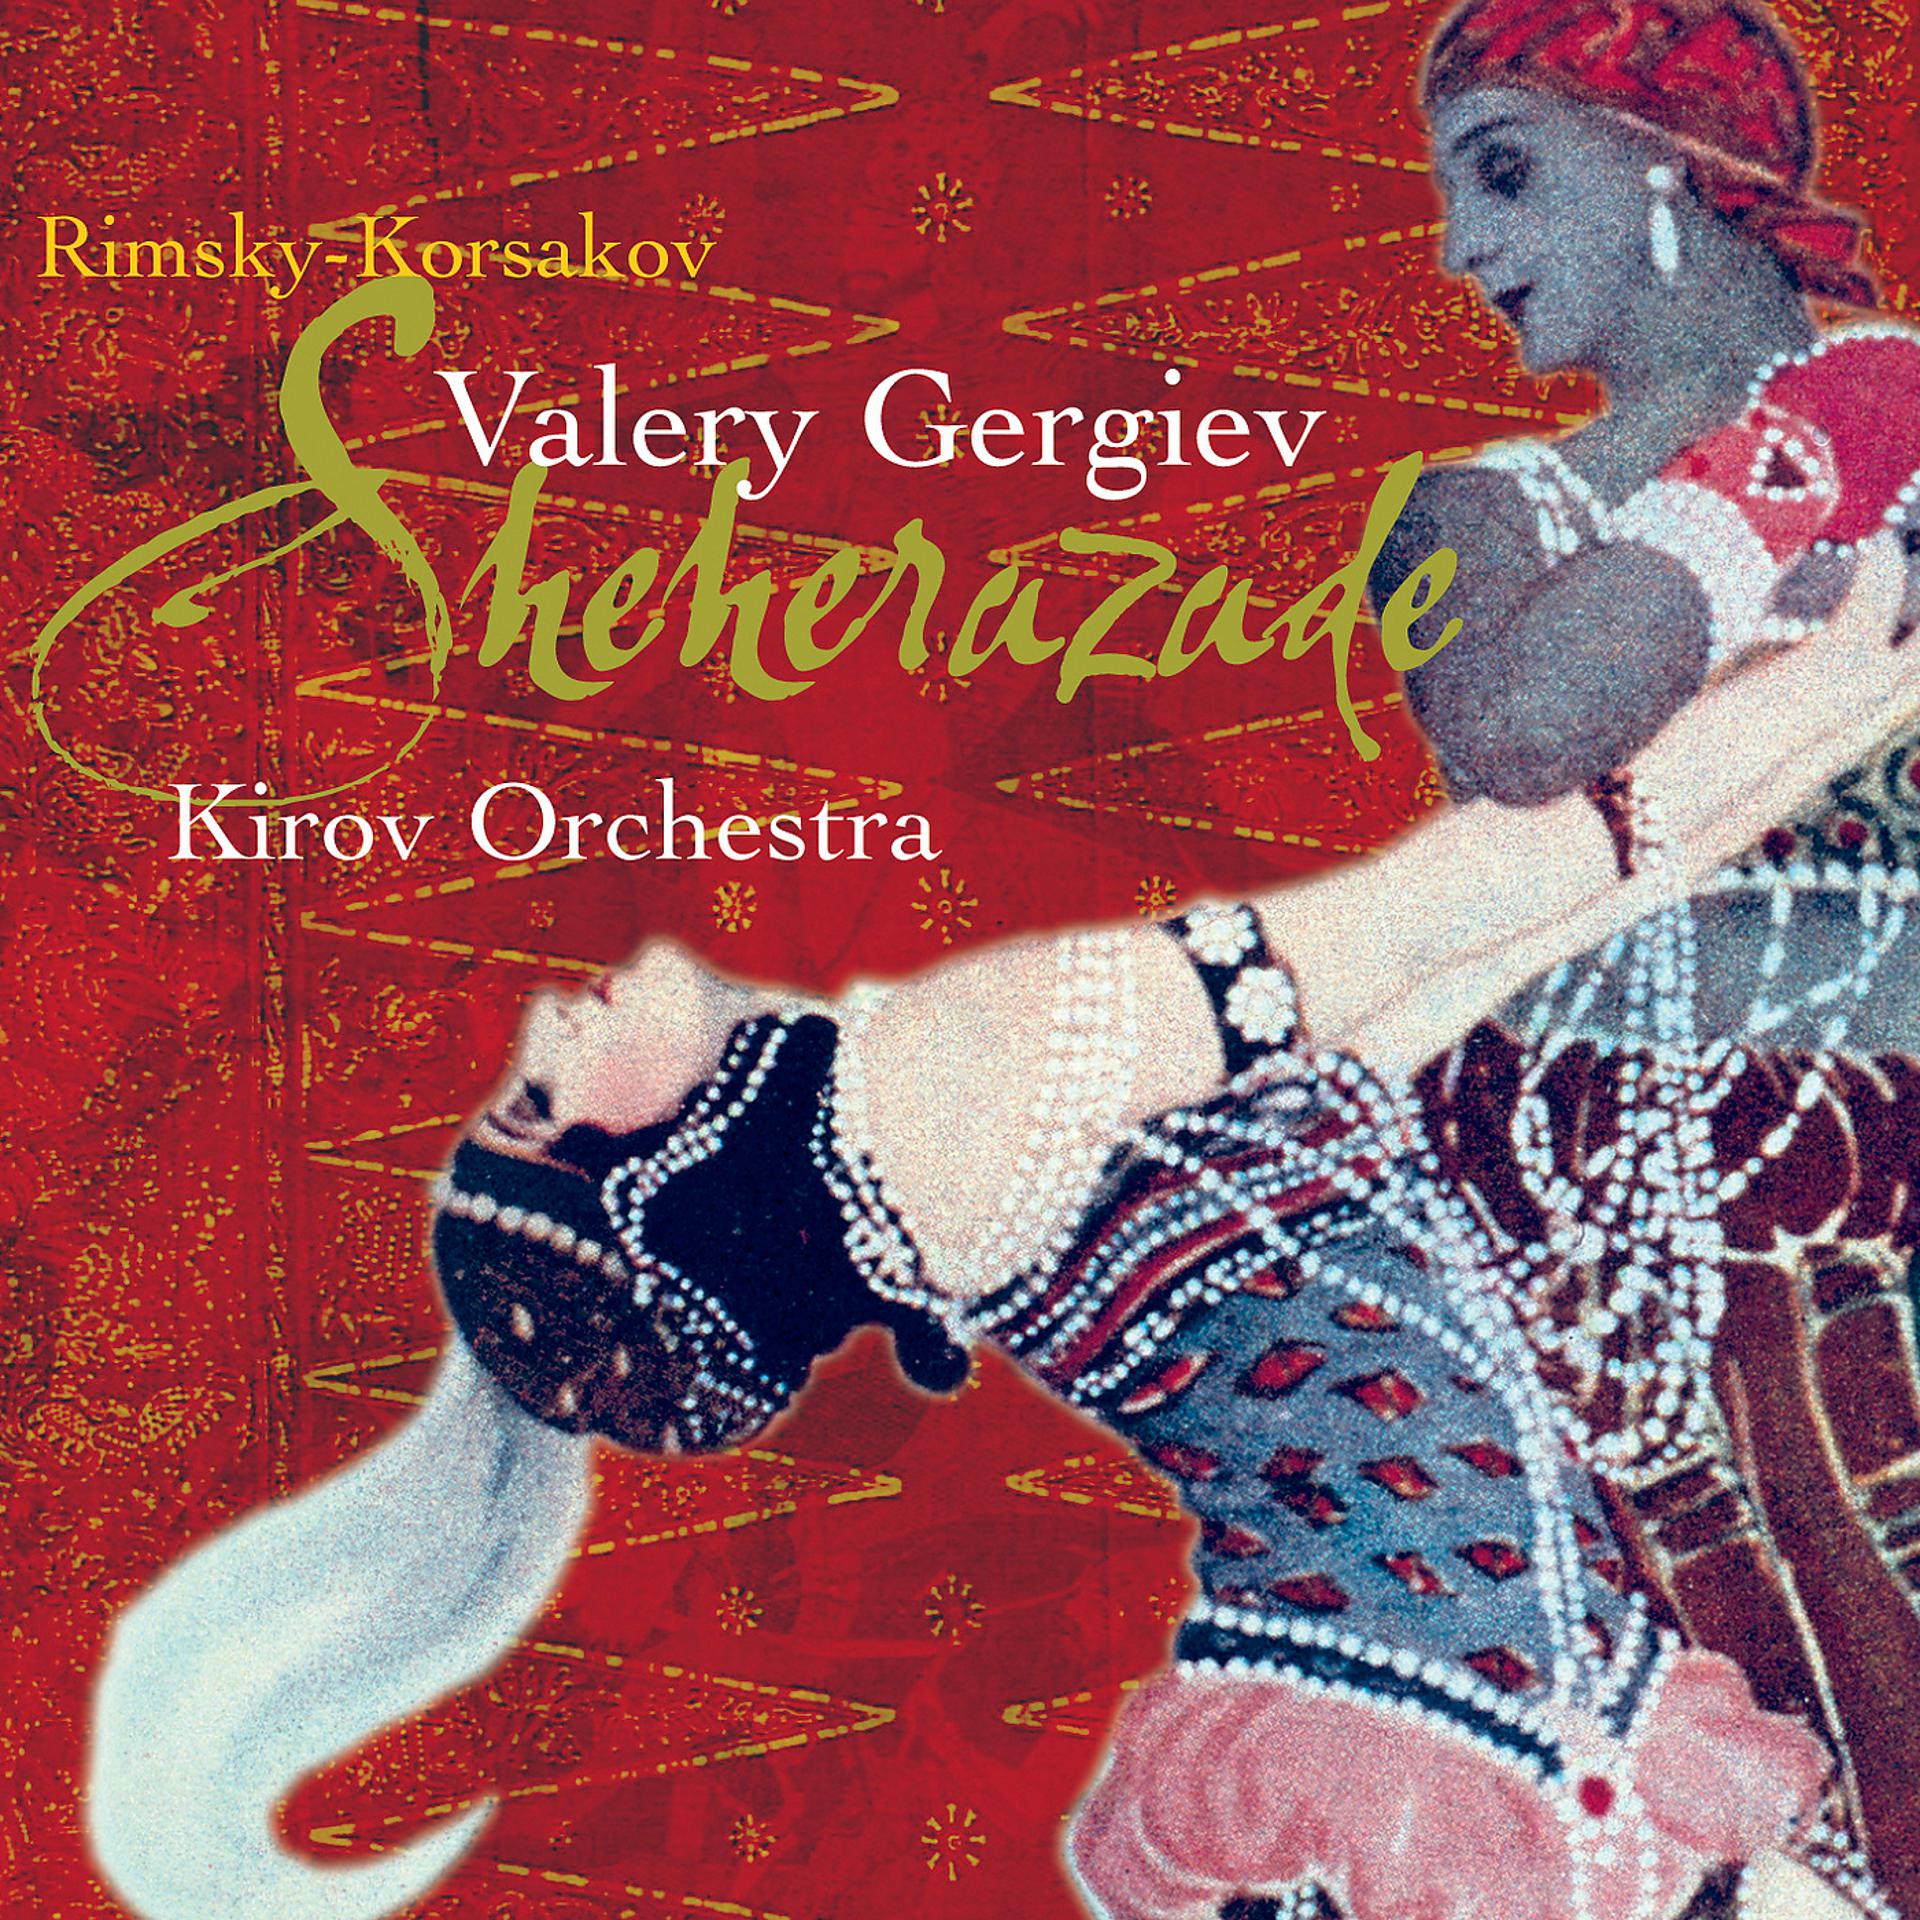 Постер альбома Rimsky-Korsakov: Scheherazade